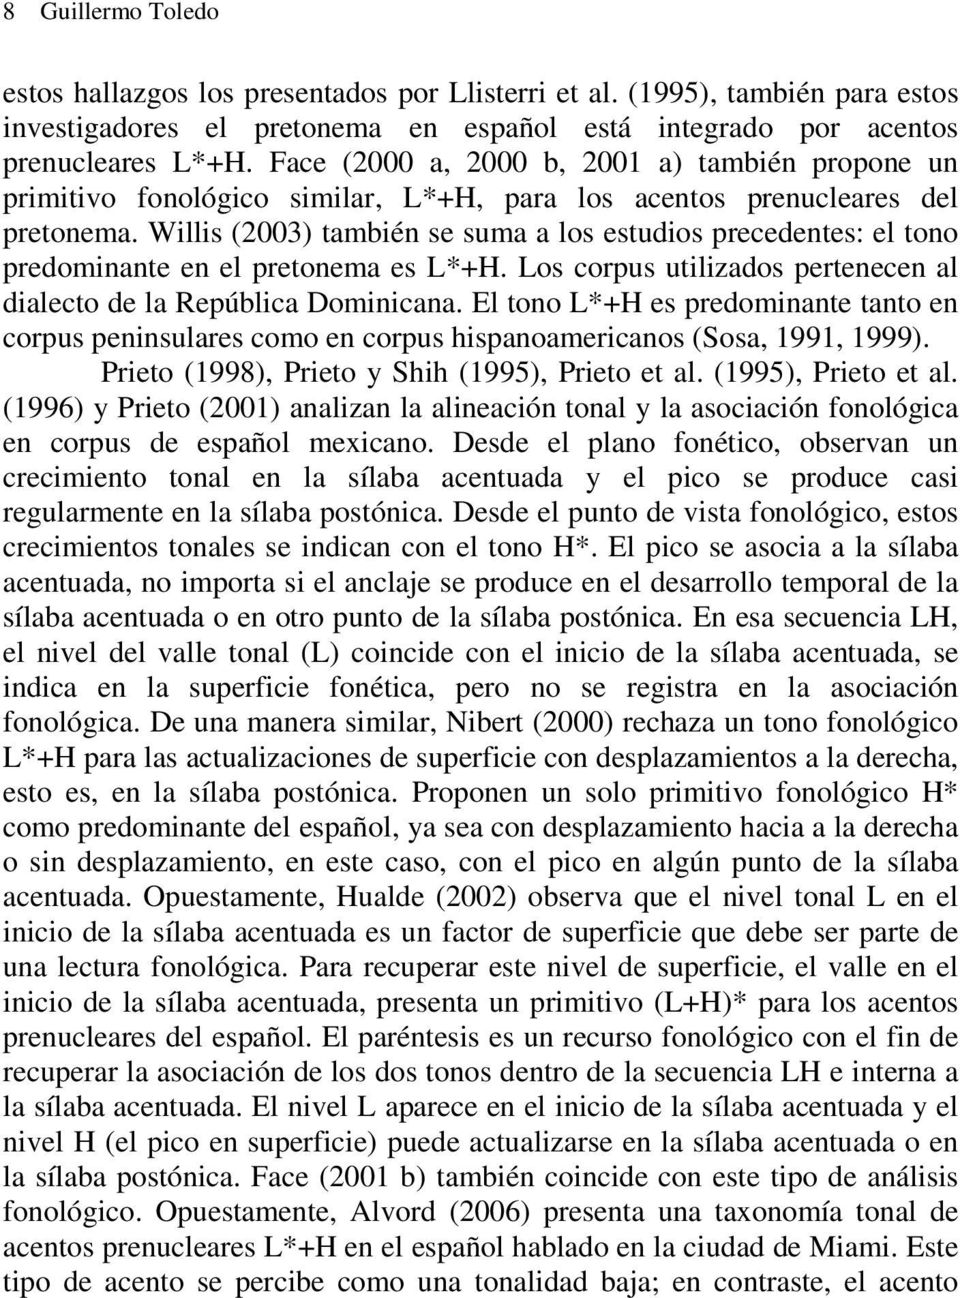 Willis (2003) también se suma a los estudios precedentes: el tono predominante en el pretonema es L*+H. Los corpus utilizados pertenecen al dialecto de la República Dominicana.